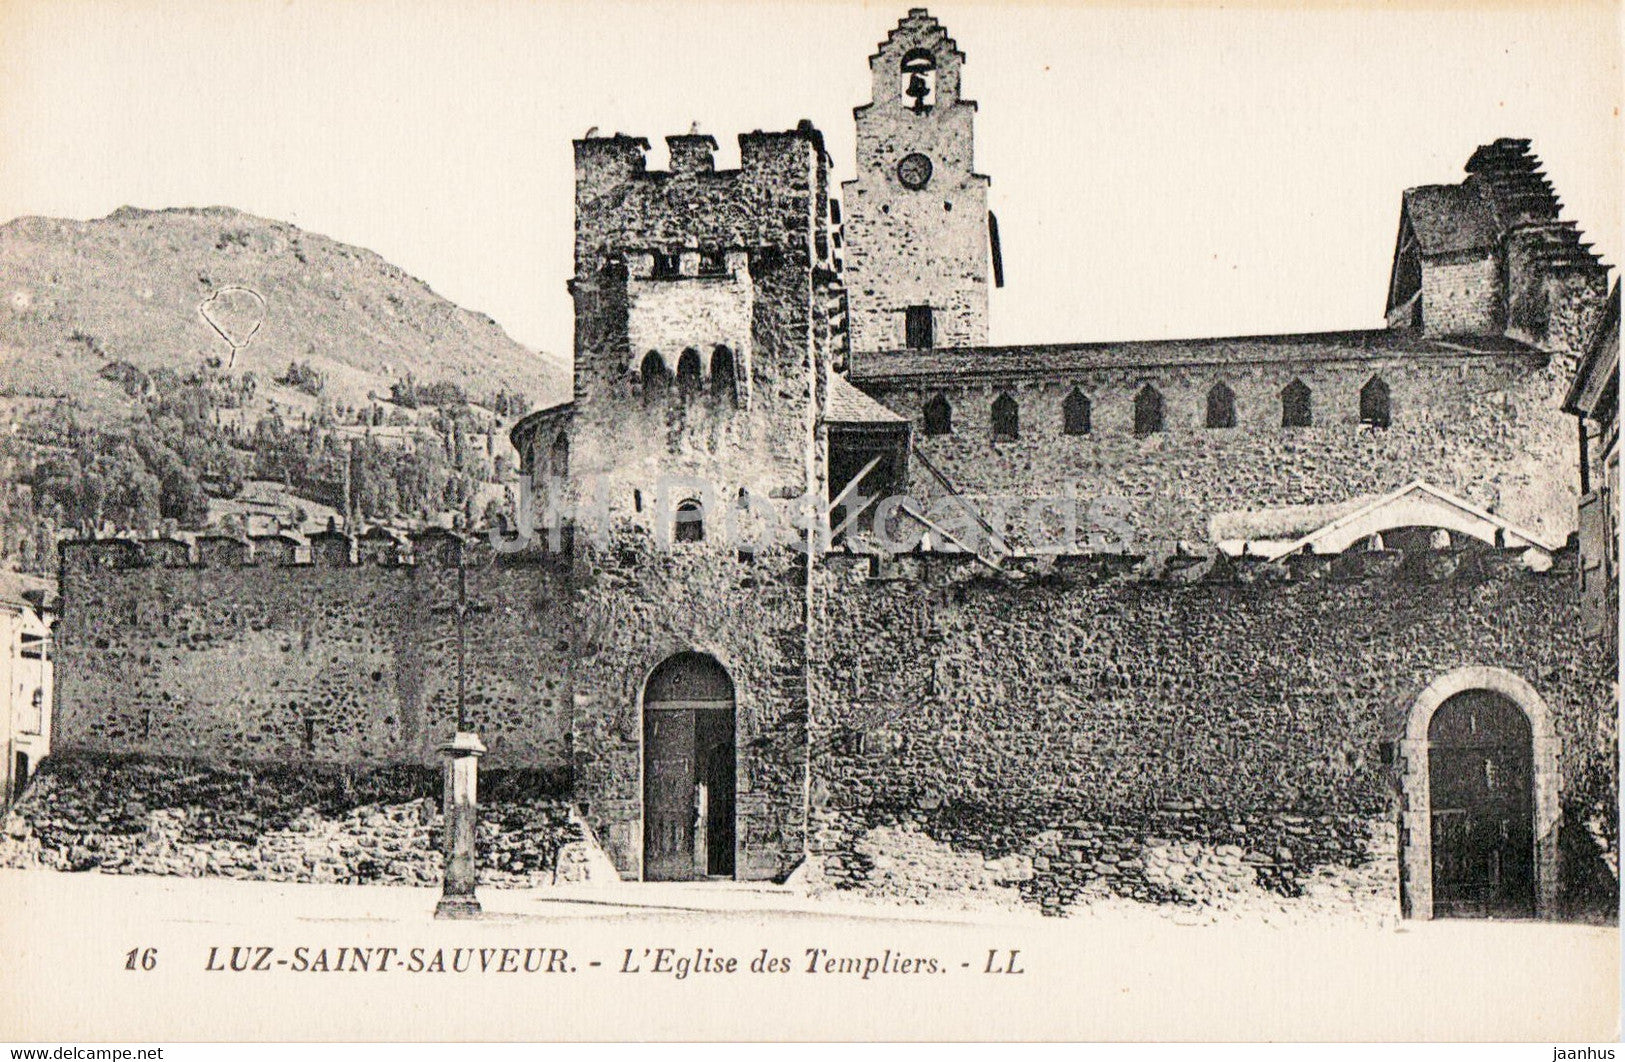 Luz Saint Sauveur - L'Eglise des Templiers - church - 16 - old postcard - France - unused - JH Postcards